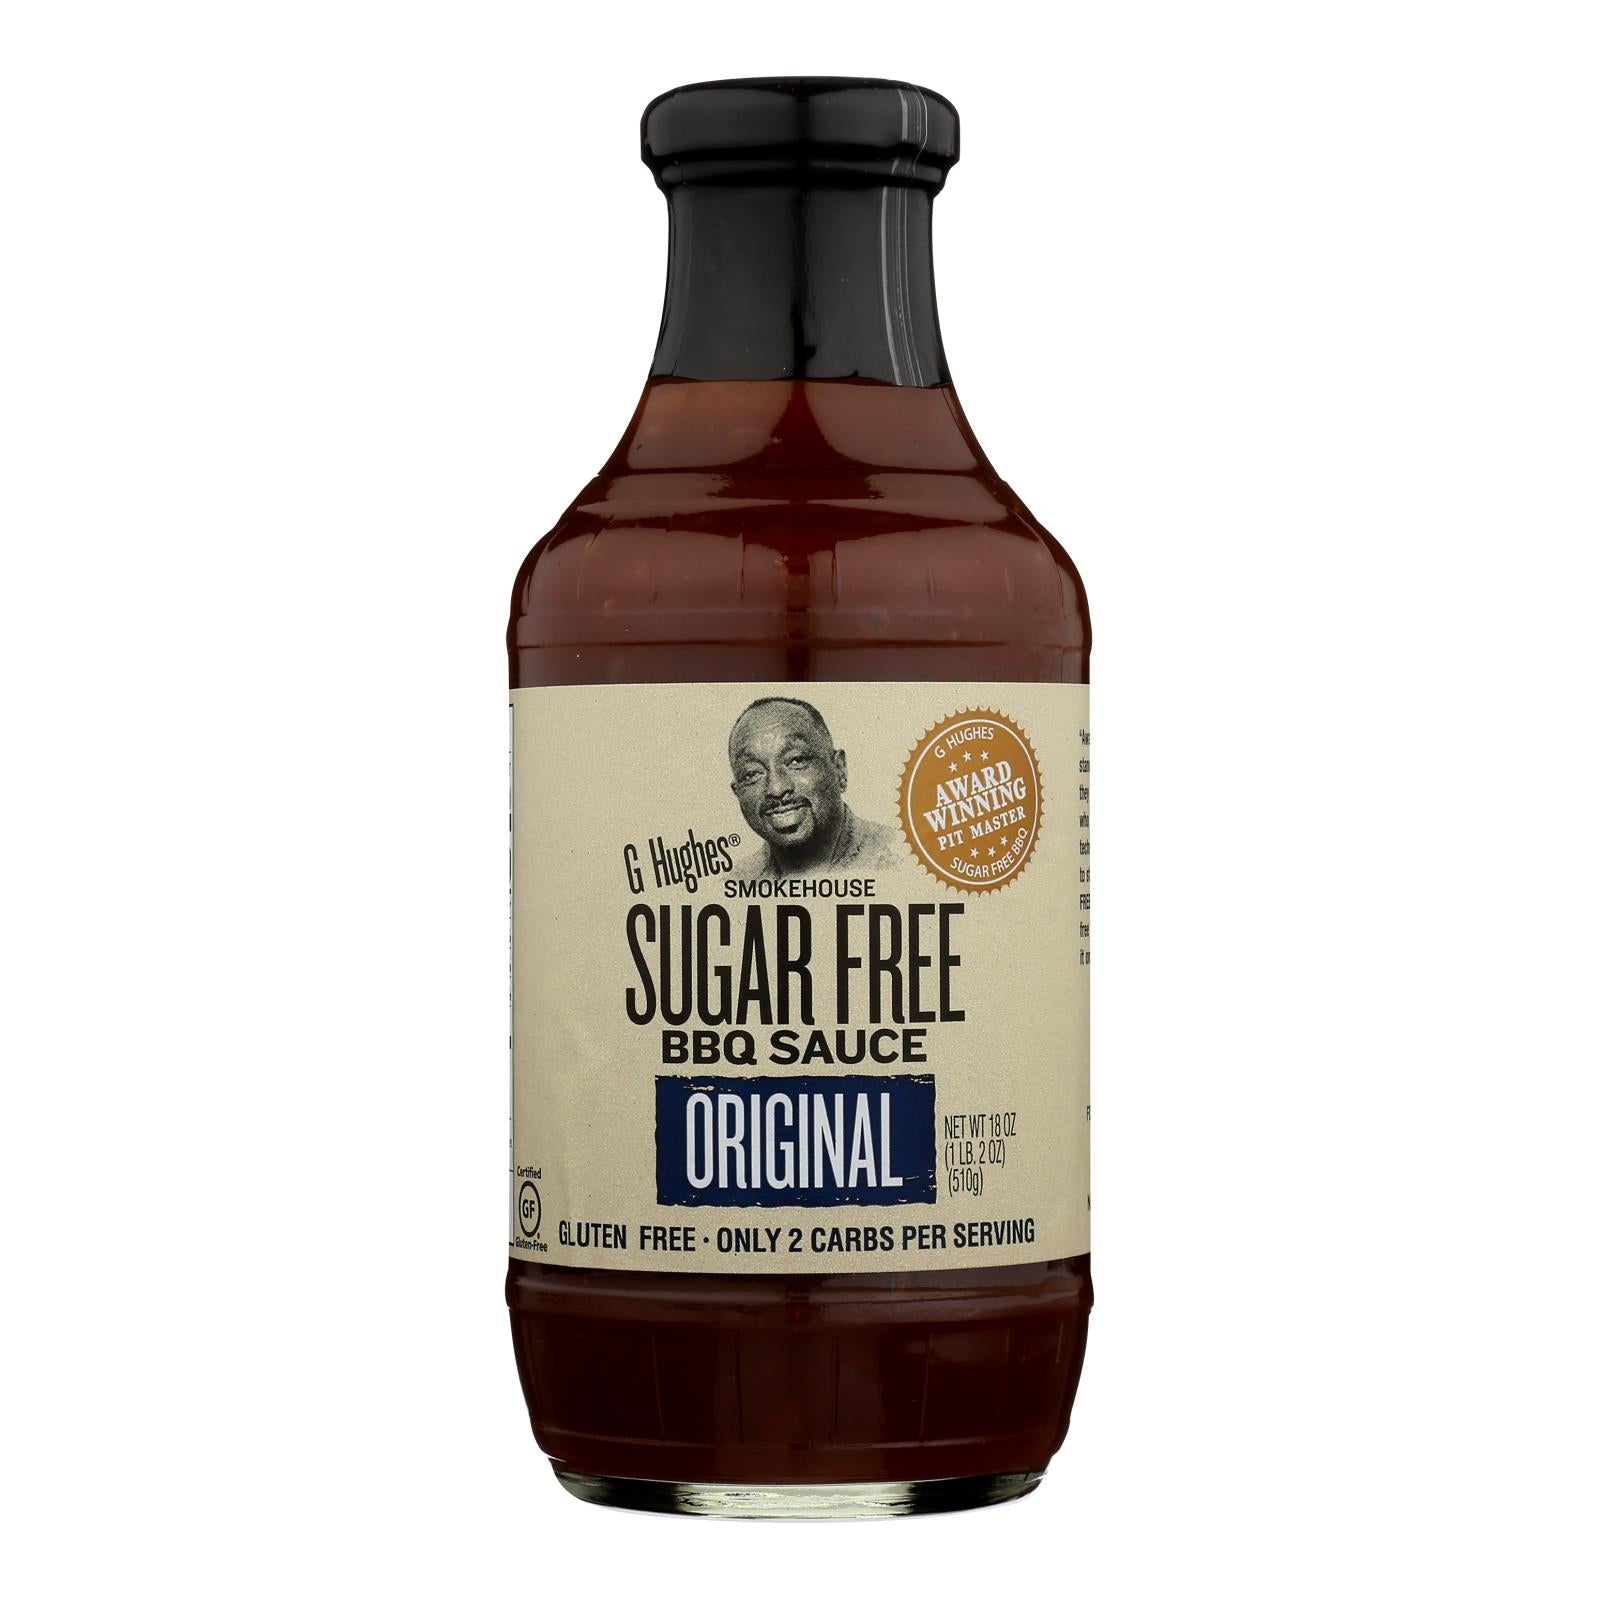 G Hughes Original Sugar Free BBQ Sauce - Case of 6 - 18 OZ